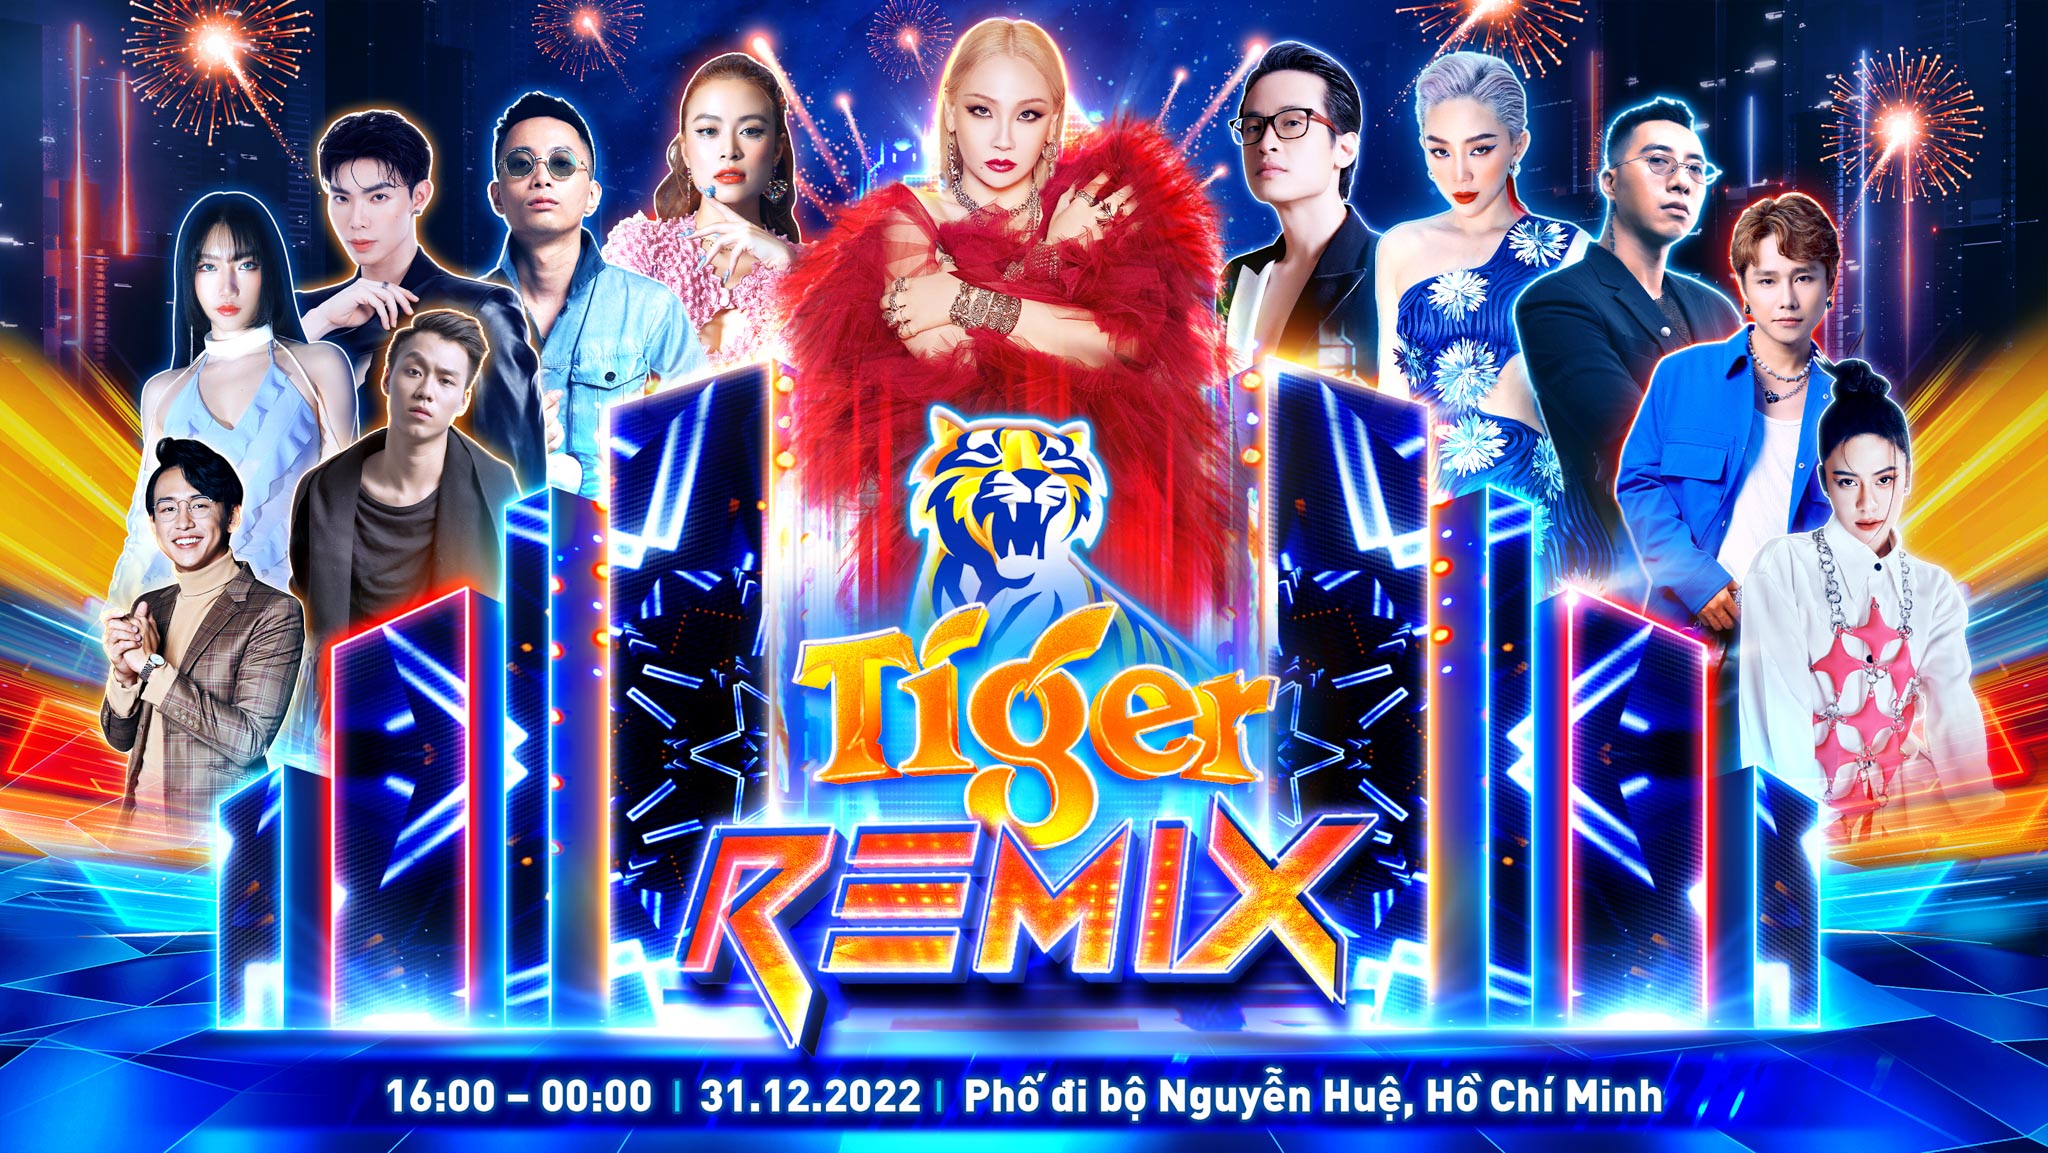 CL - Nghệ sĩ hàng đầu Châu Á sẽ trình diễn tại Đại nhạc hội TIGER REMIX 2023 TP. Hồ Chí Minh